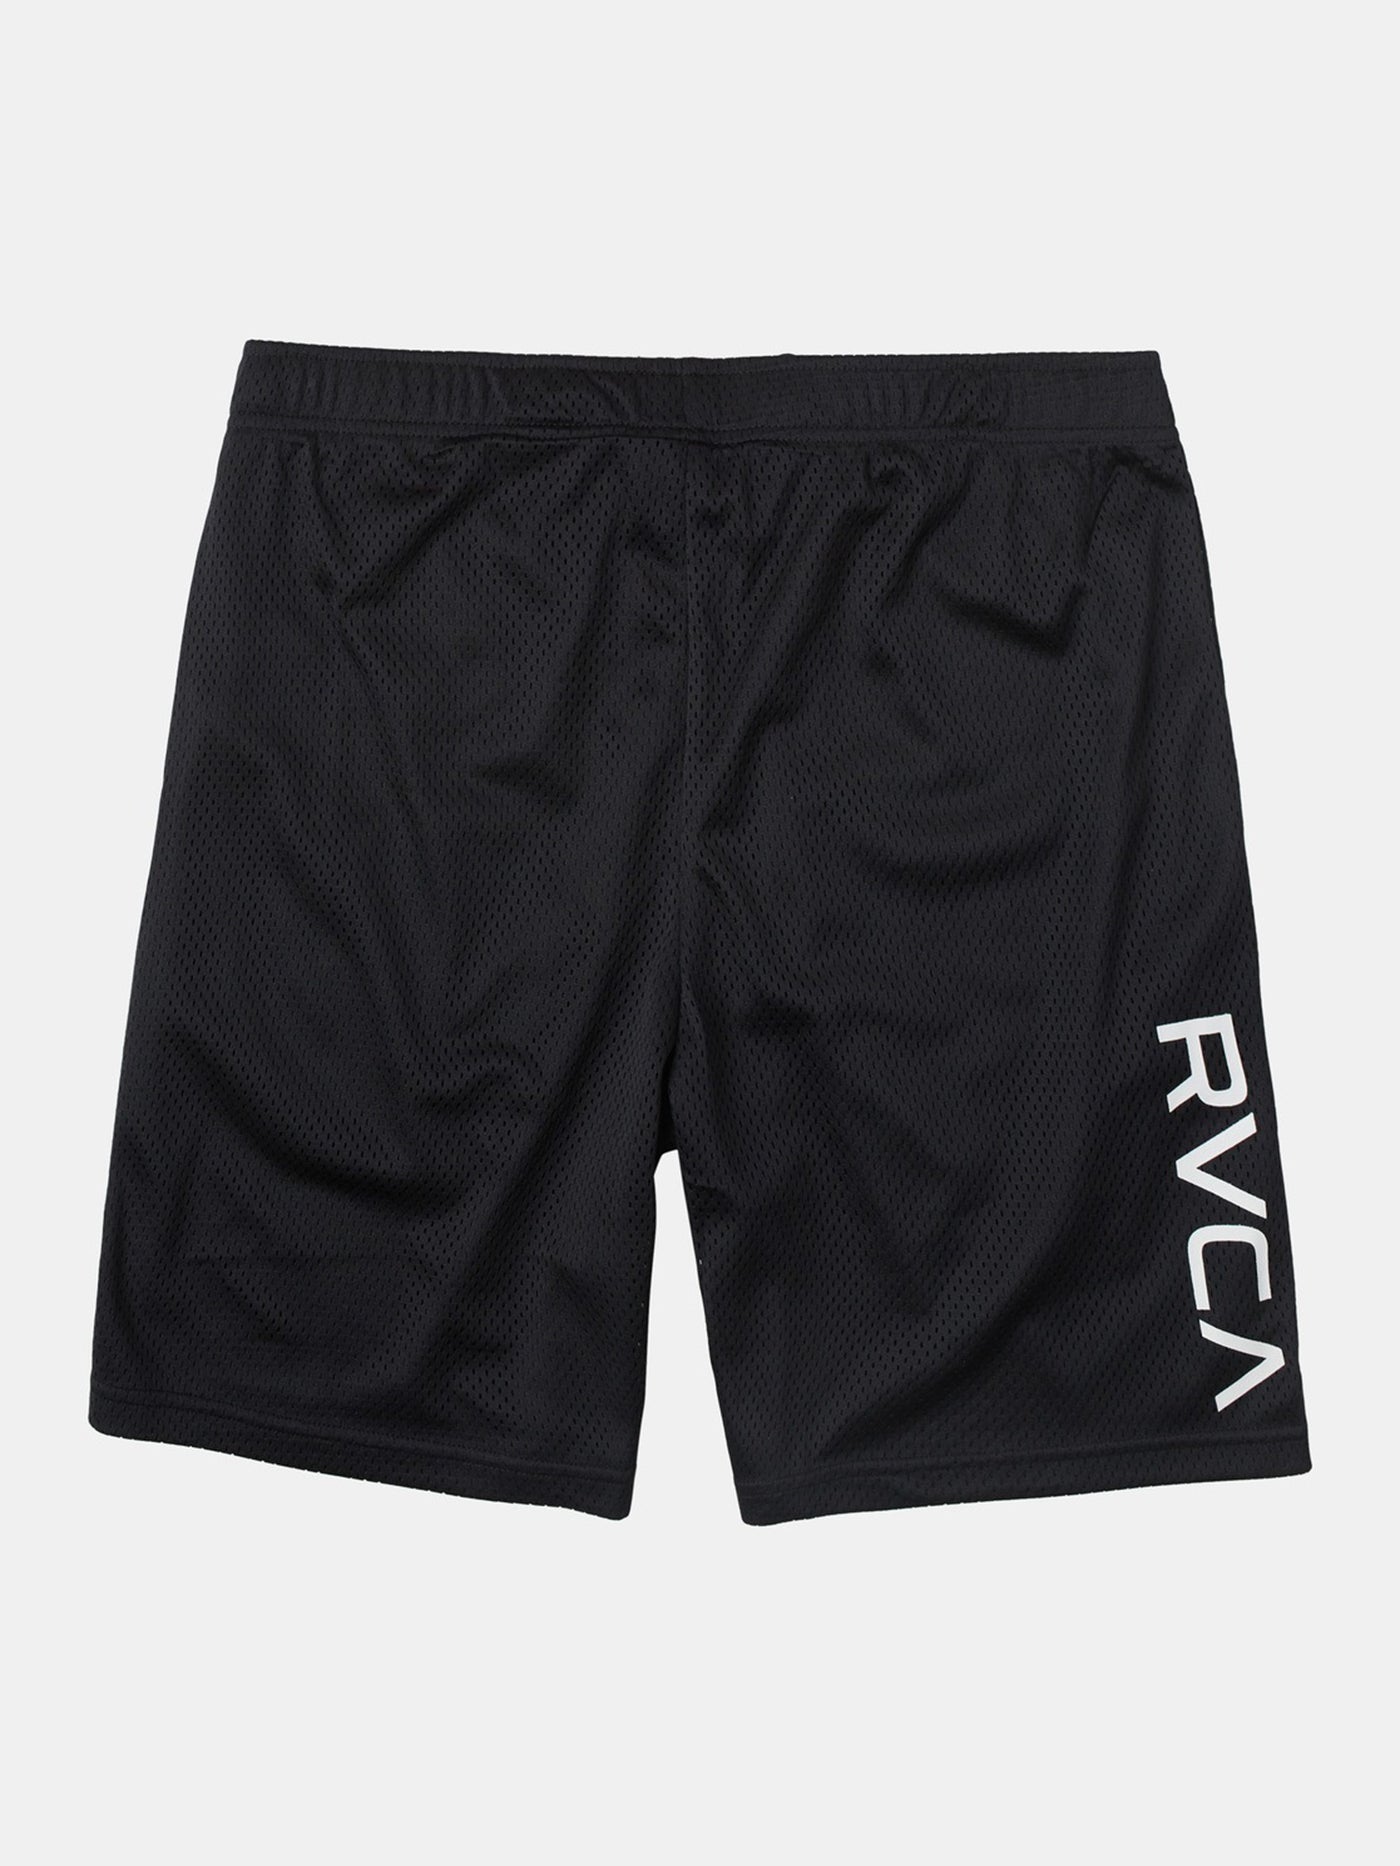 RVCA VA Mesh II Sport Shorts